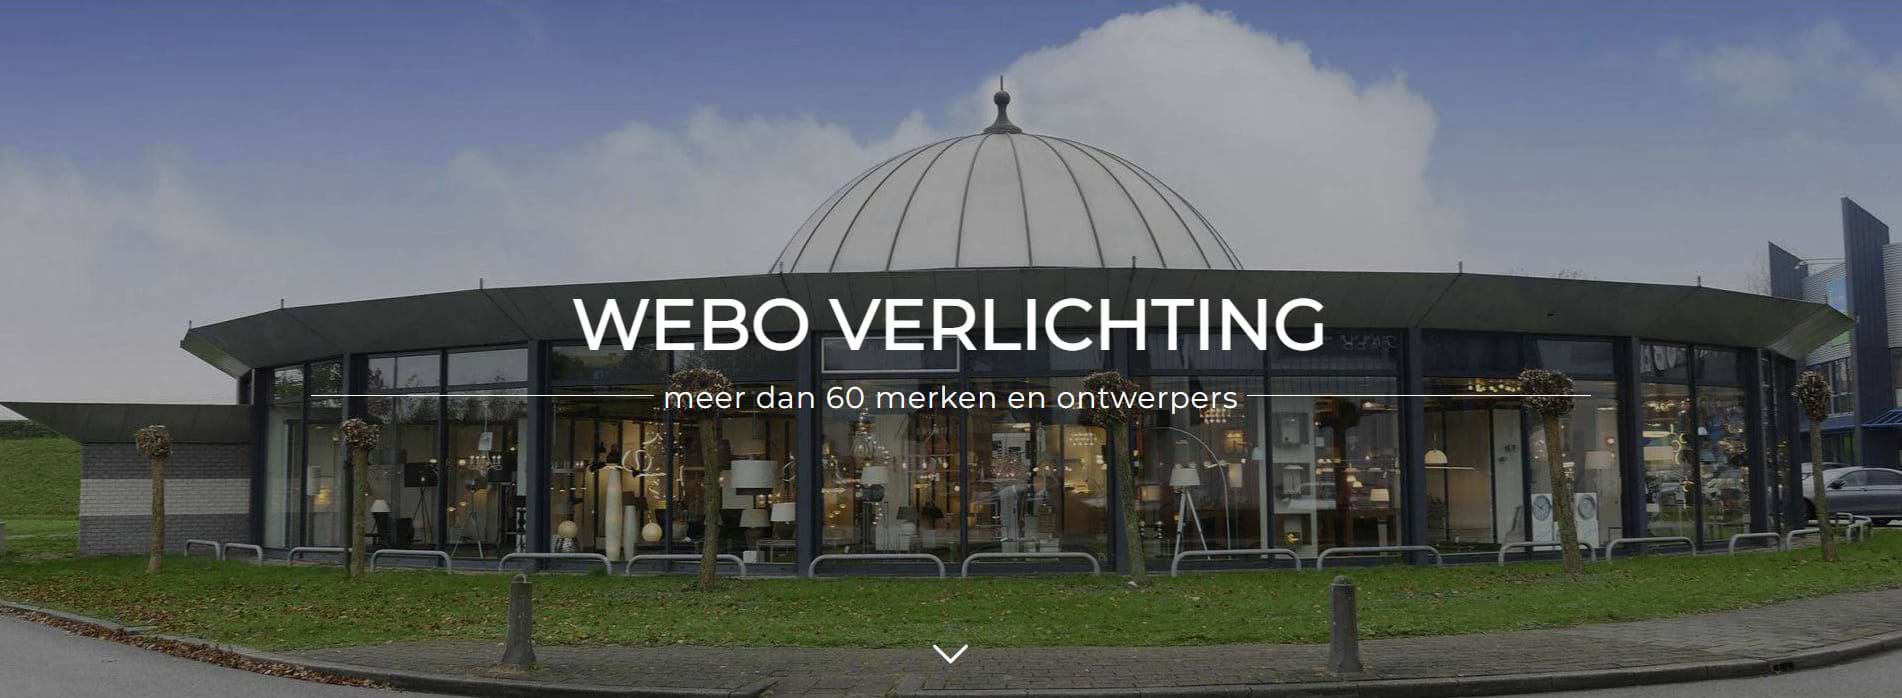 Webo Verlichting - lampen & lampen - Nederlands grootste verlichtingsshowroom